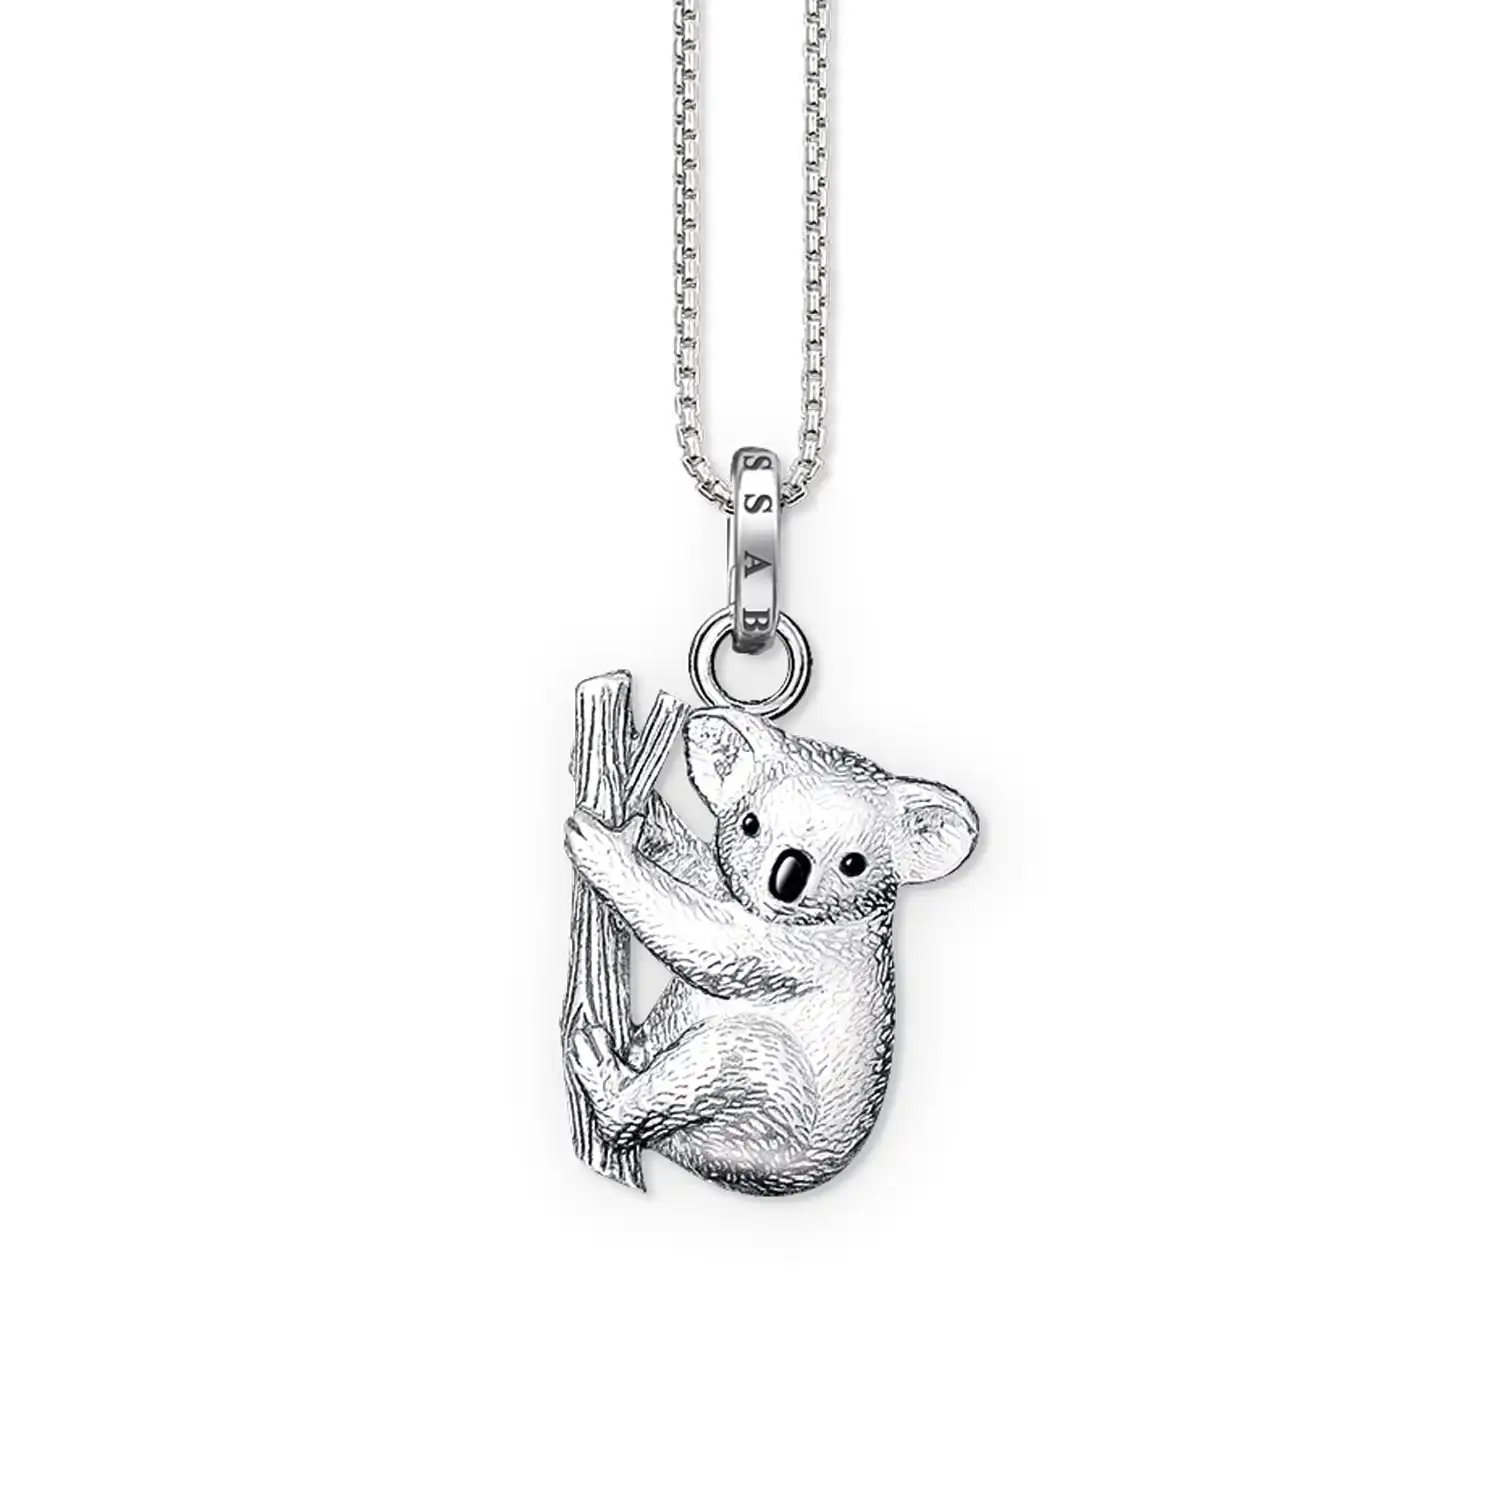 Thomas Sabo Limited Edition "Koala" Necklace